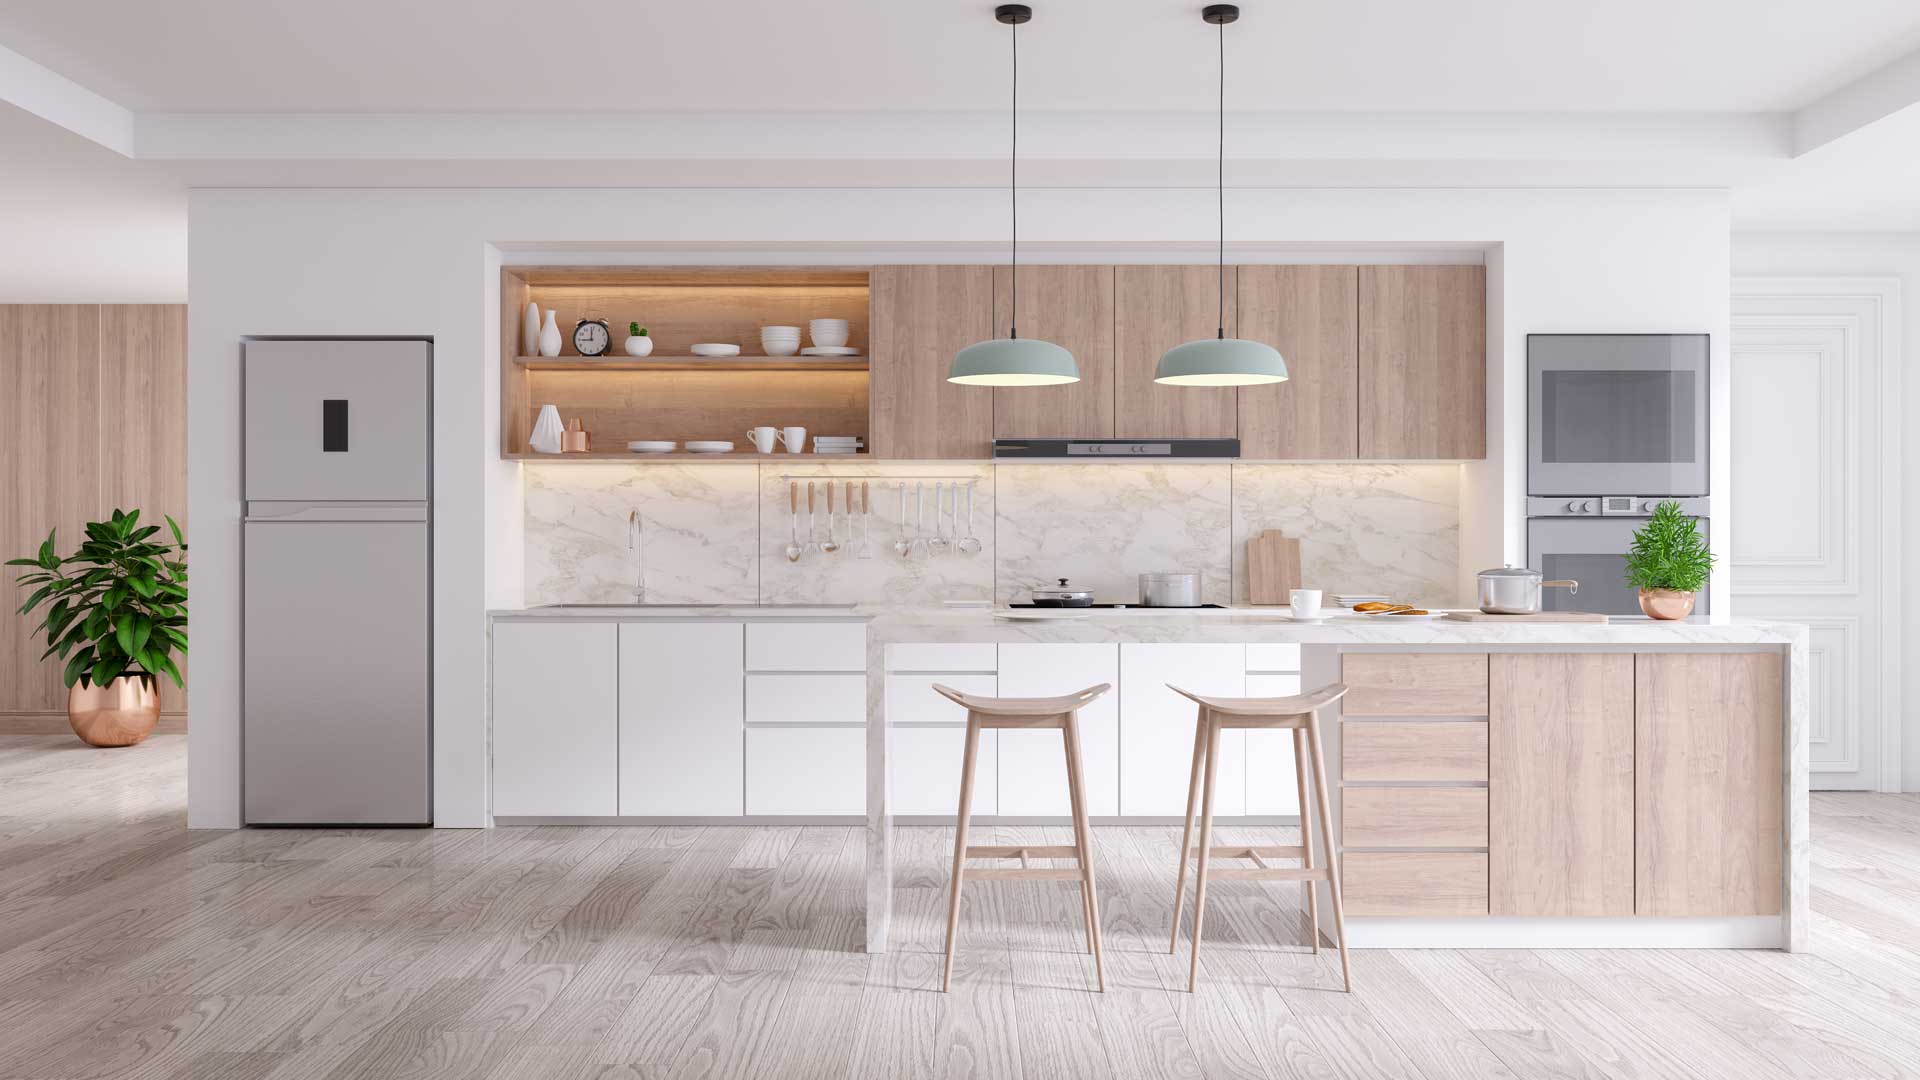 A bright, modern kitchen